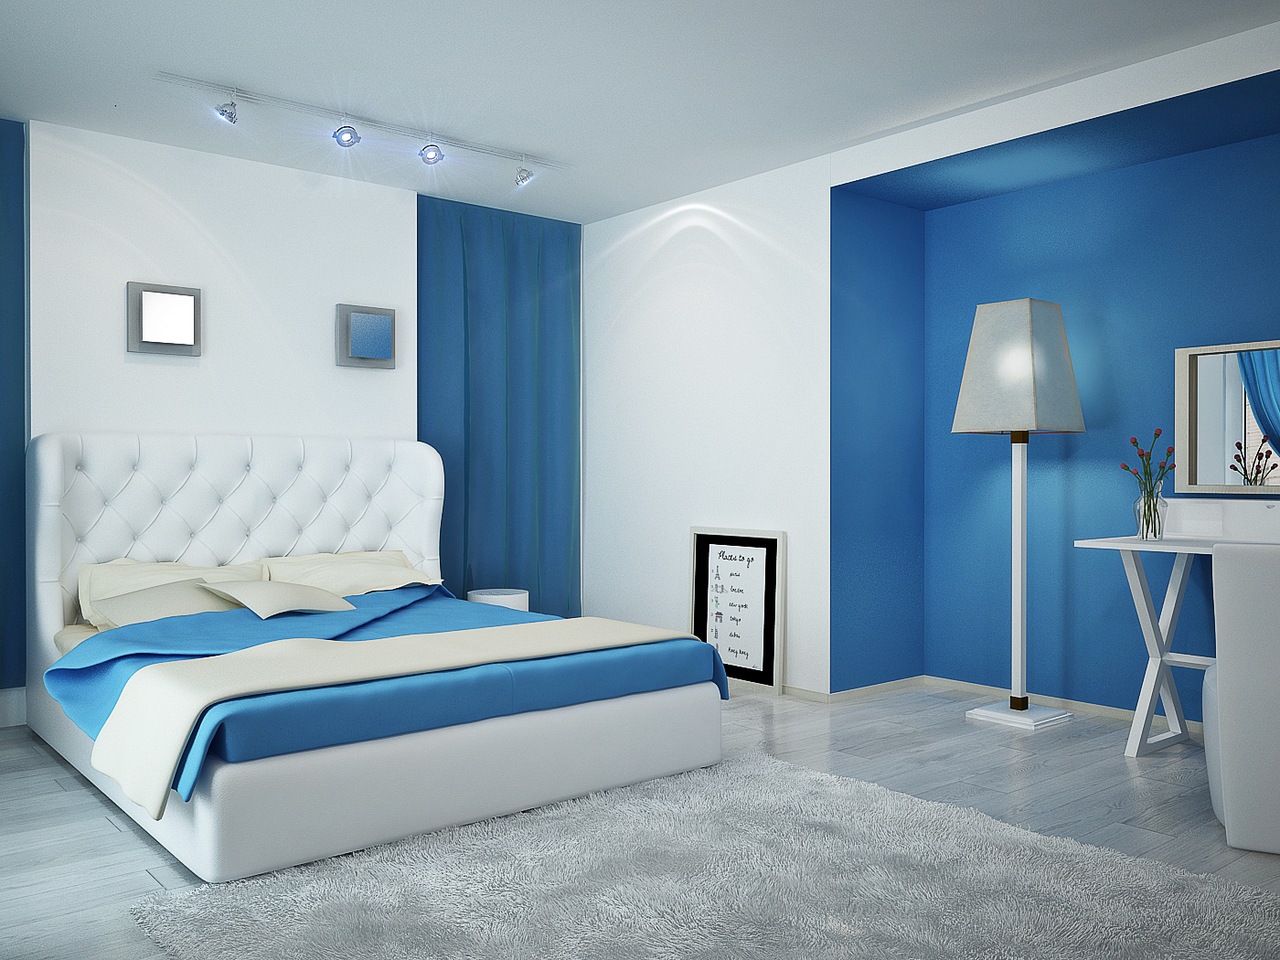 Διαφορετικοί τύποι φωτισμού σε ένα μπλε και λευκό υπνοδωμάτιο